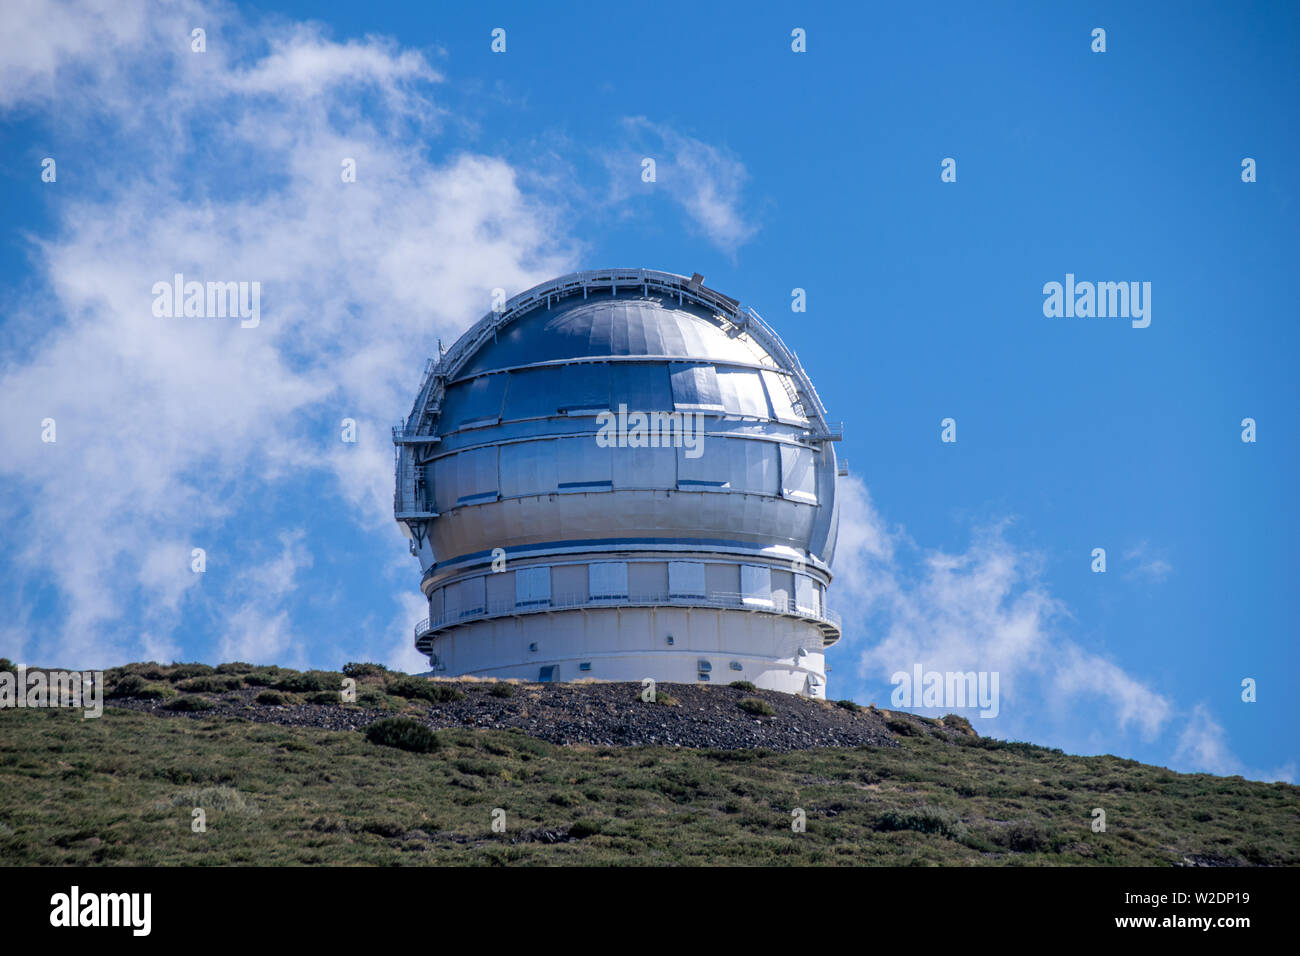 Gran Telescopio Canarias, Astronomical Telescope at Roque de los Muchachos  Observatory, La Palma Island, Canaries, Spain Stock Photo - Alamy